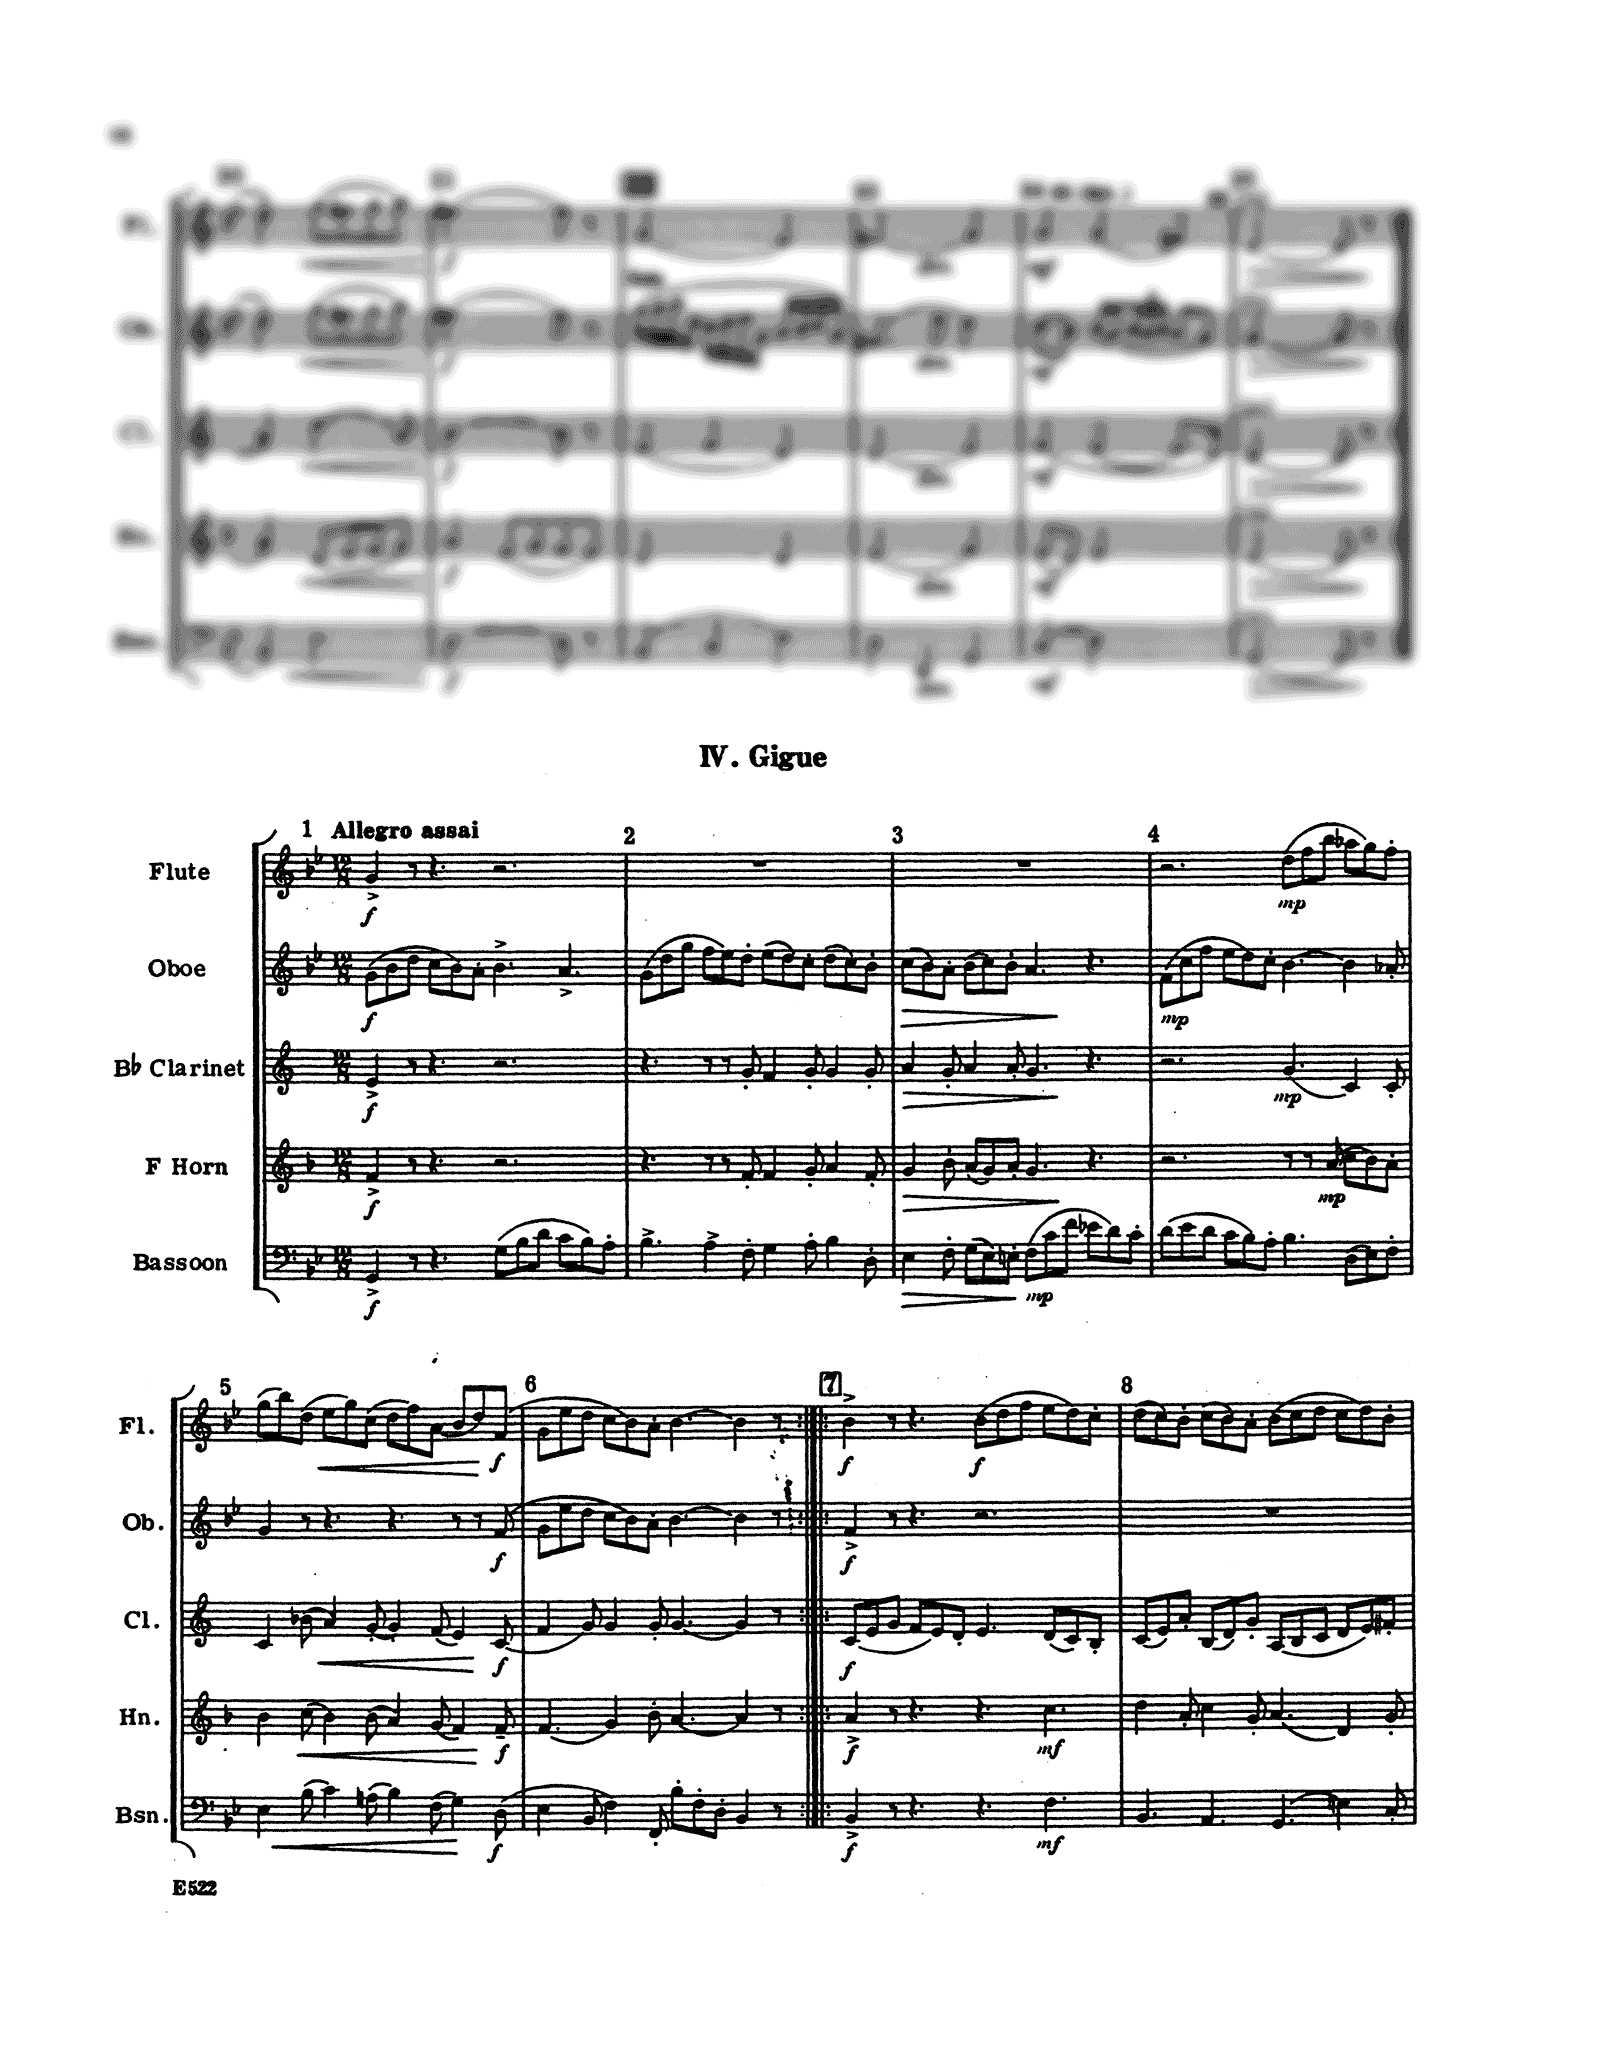 Handel Suite in G Minor, HWV 452 wind quintet arrangement - Movement 4